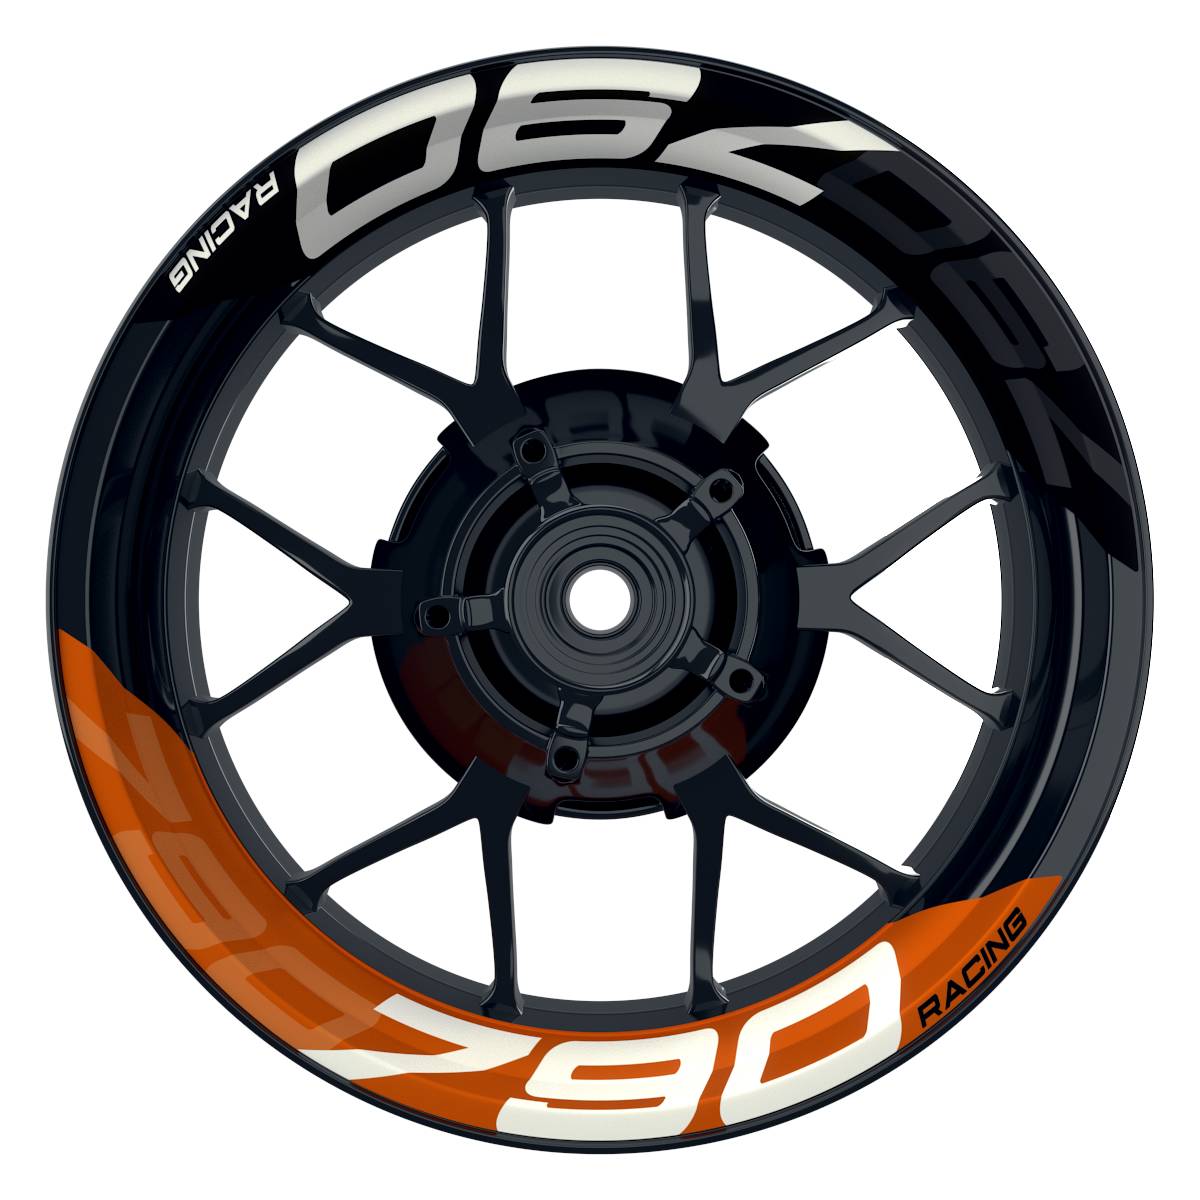 Wheelsticker Felgenaufkleber KTM Racing 790 halb halb V2 schwarz orange Frontansicht